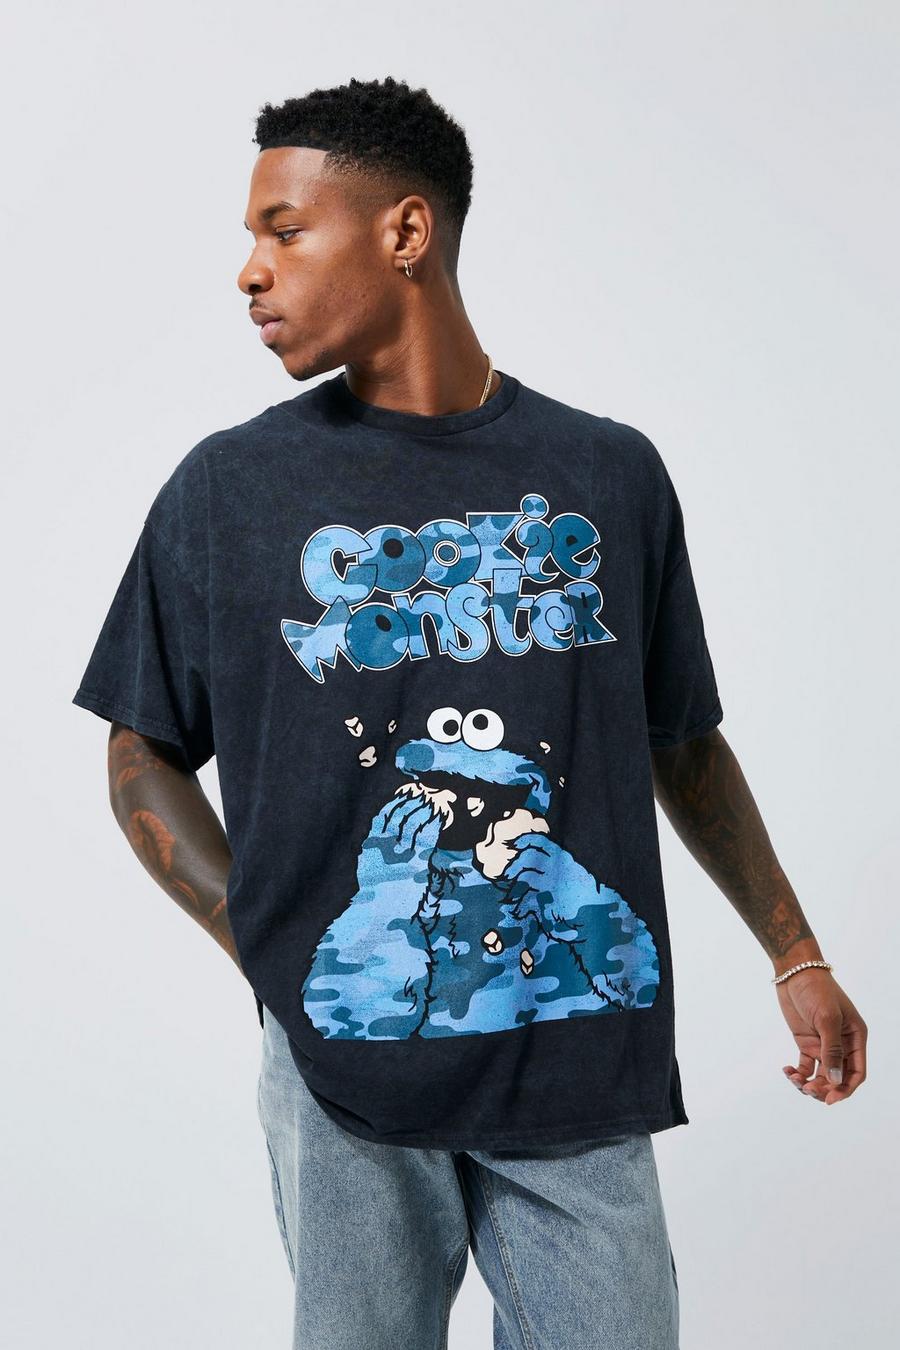 T-shirt oversize délavé à imprimé Cookie Monster, Charcoal gris